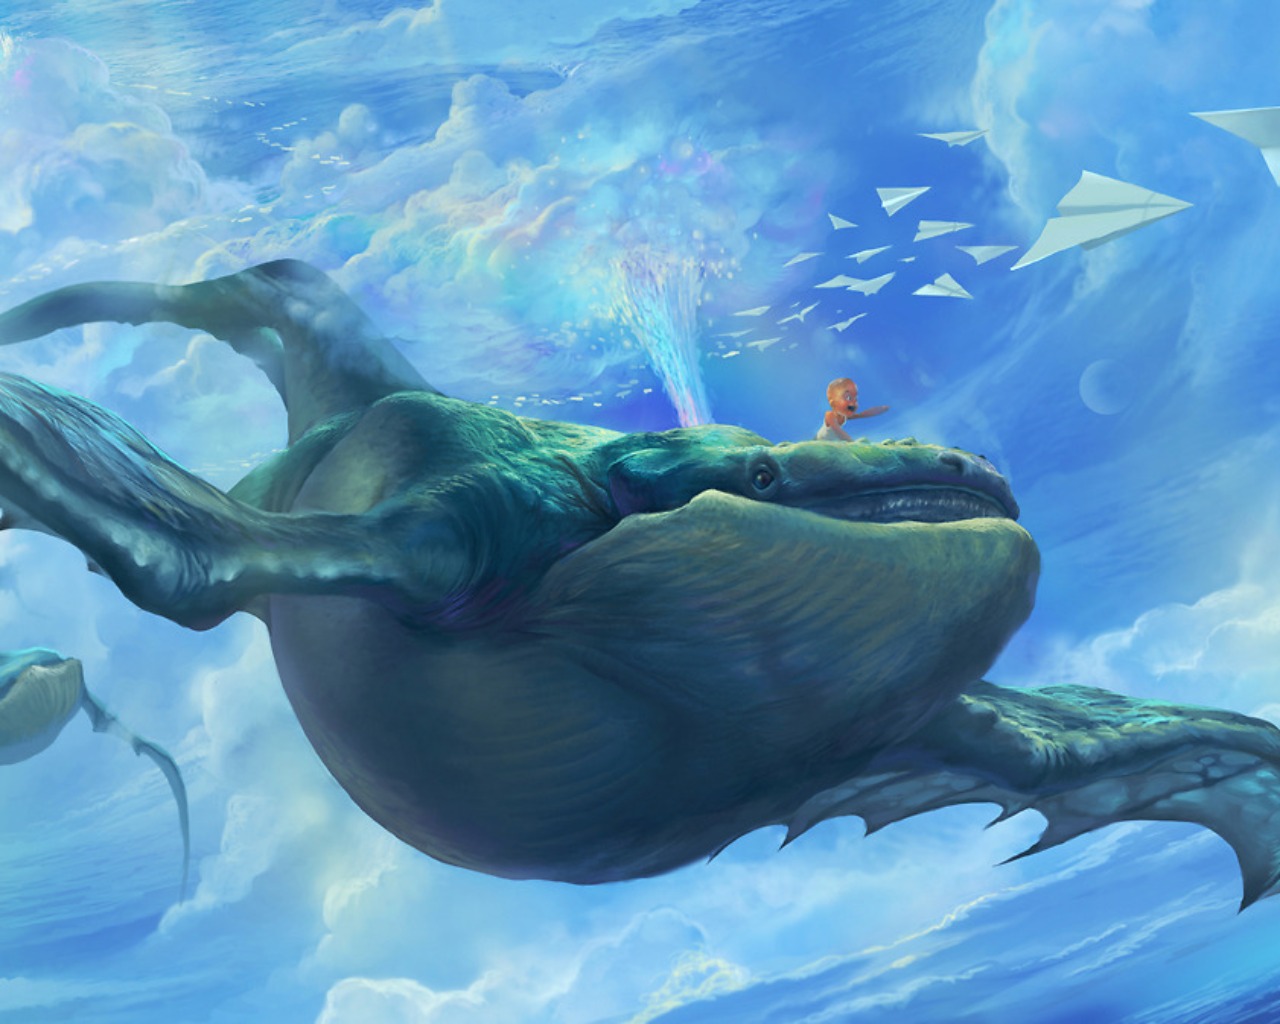 Fantasy Whale Art by RJ Palmer